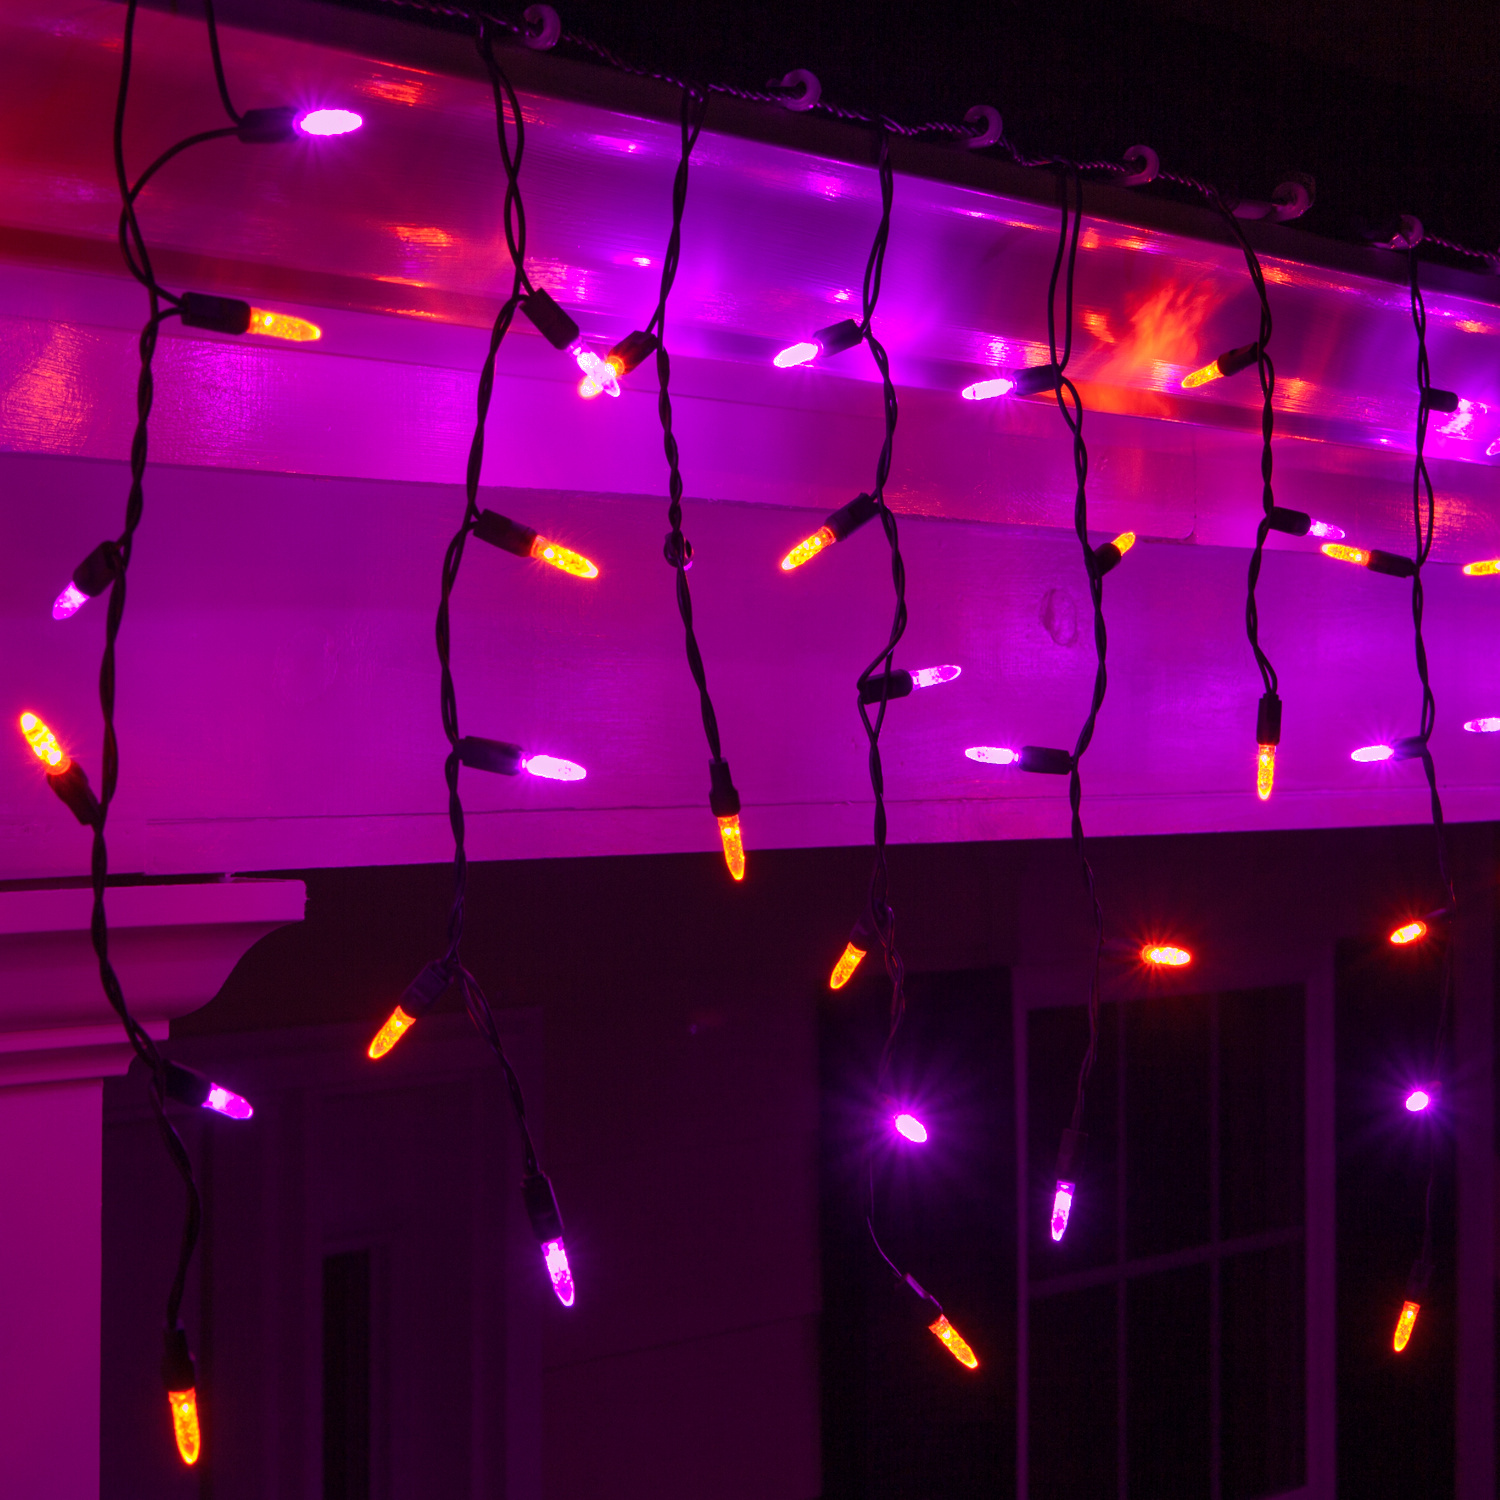 LED Christmas Lights - 70 M5 Purple, Orange Halloween LED Icicle ...